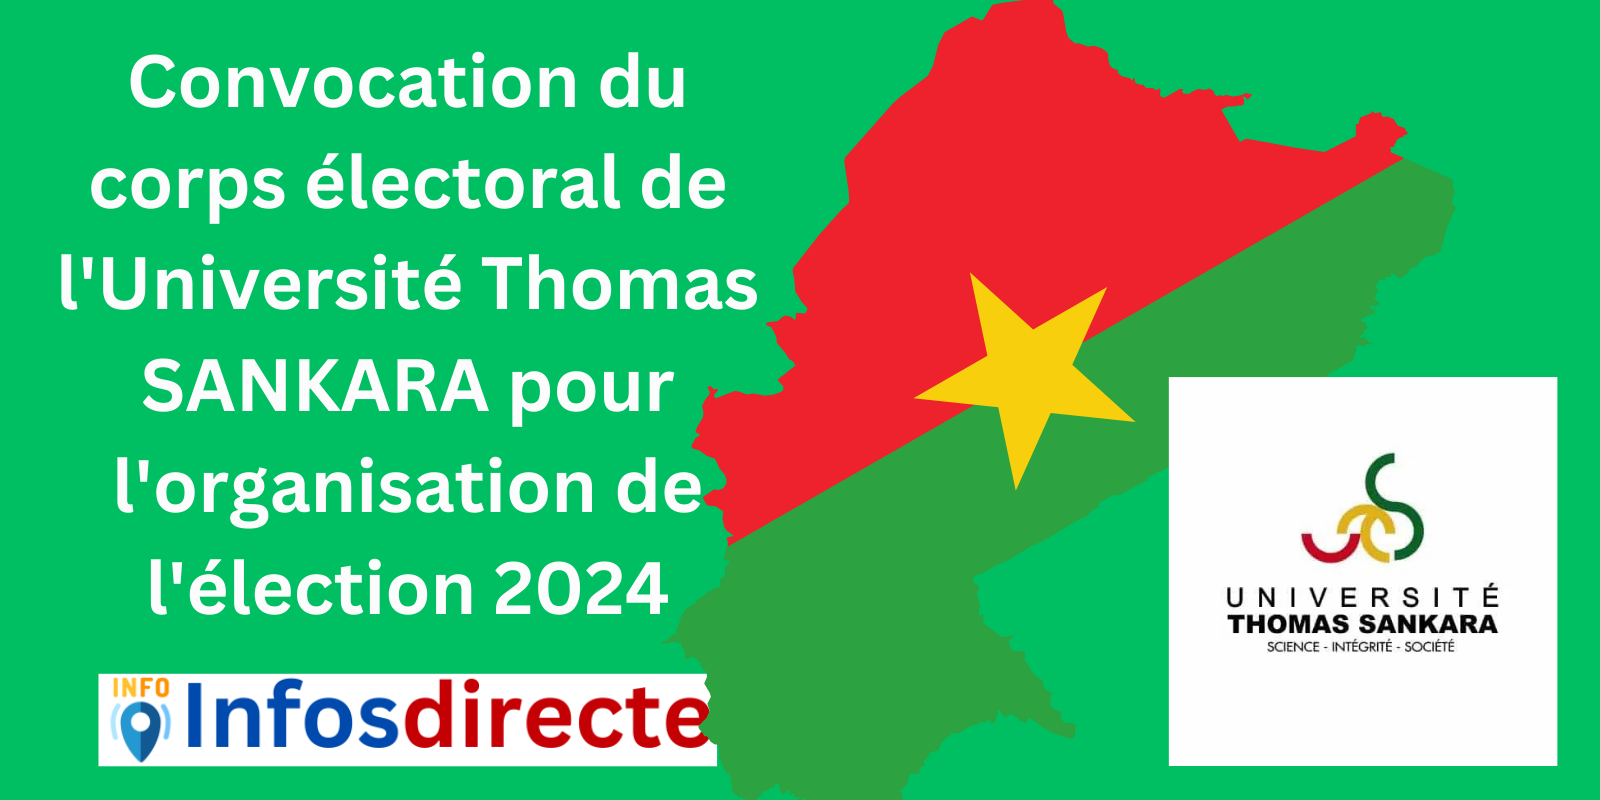 Convocation du corps électoral de l'Université Thomas SANKARA pour l'organisation de l'élection 2024